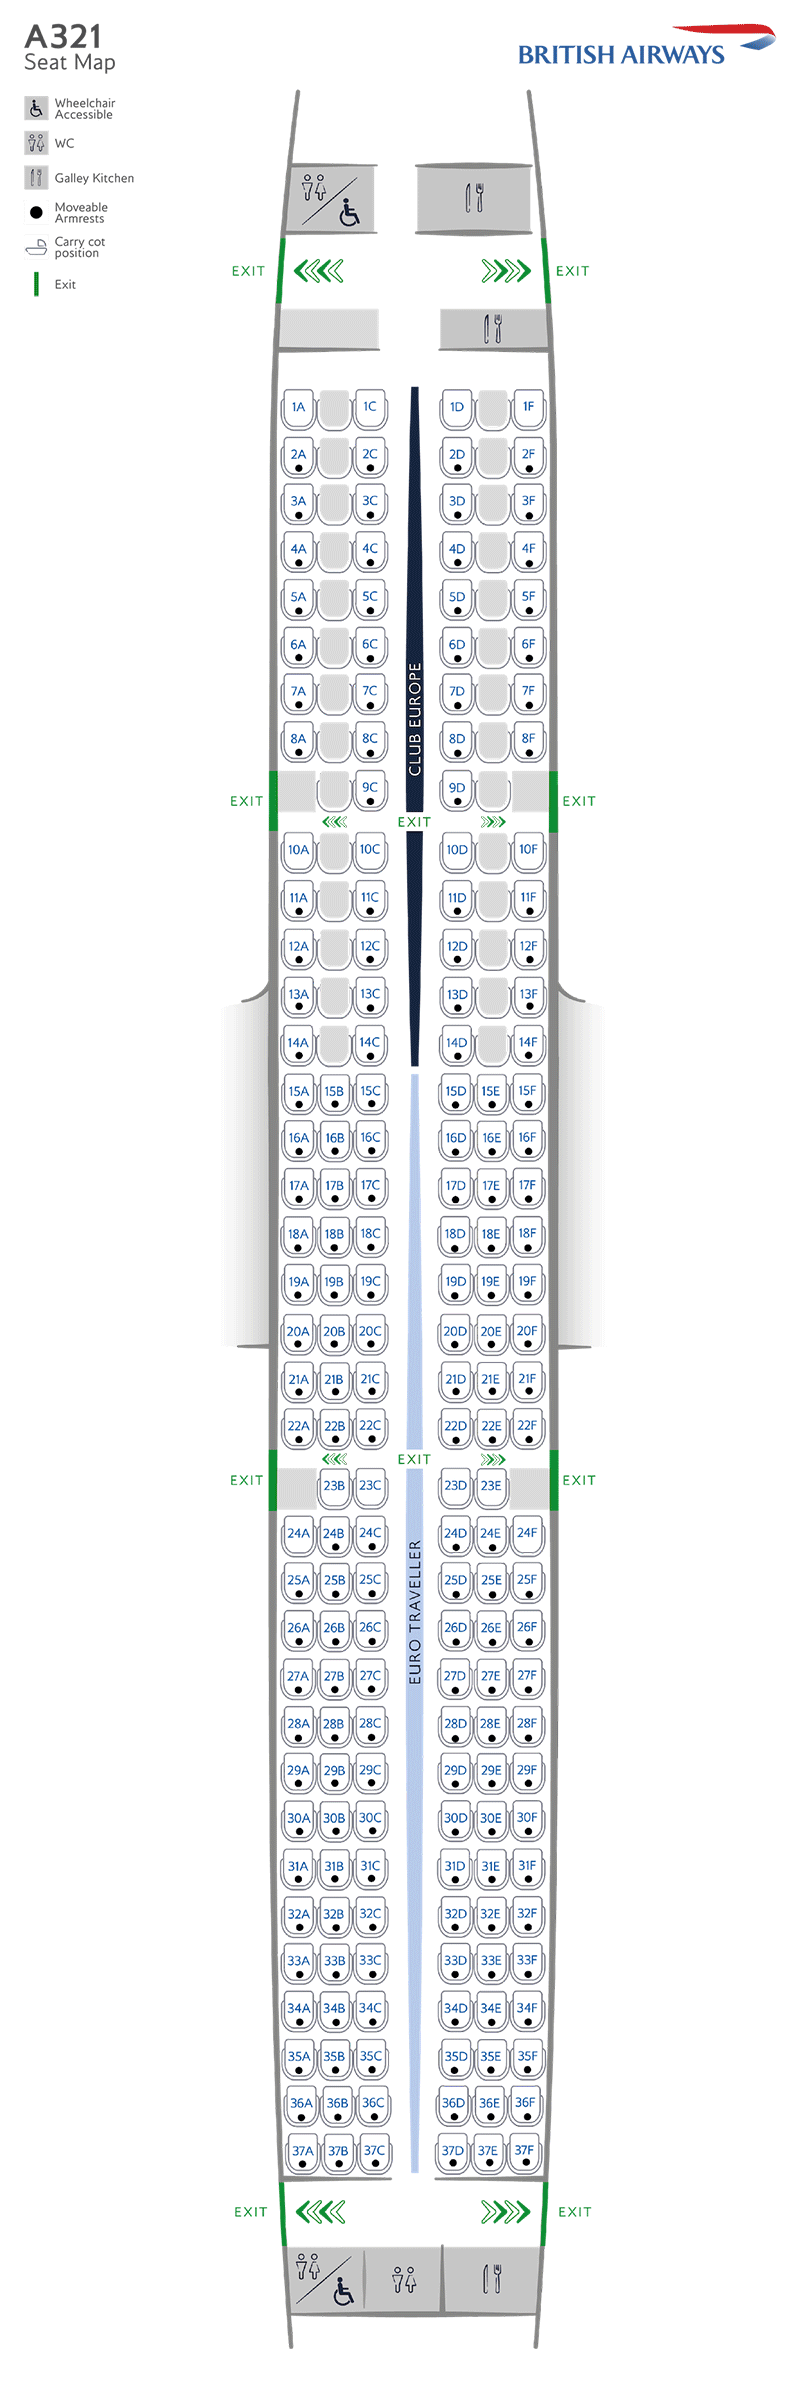 Configurazione dei posti A321-200